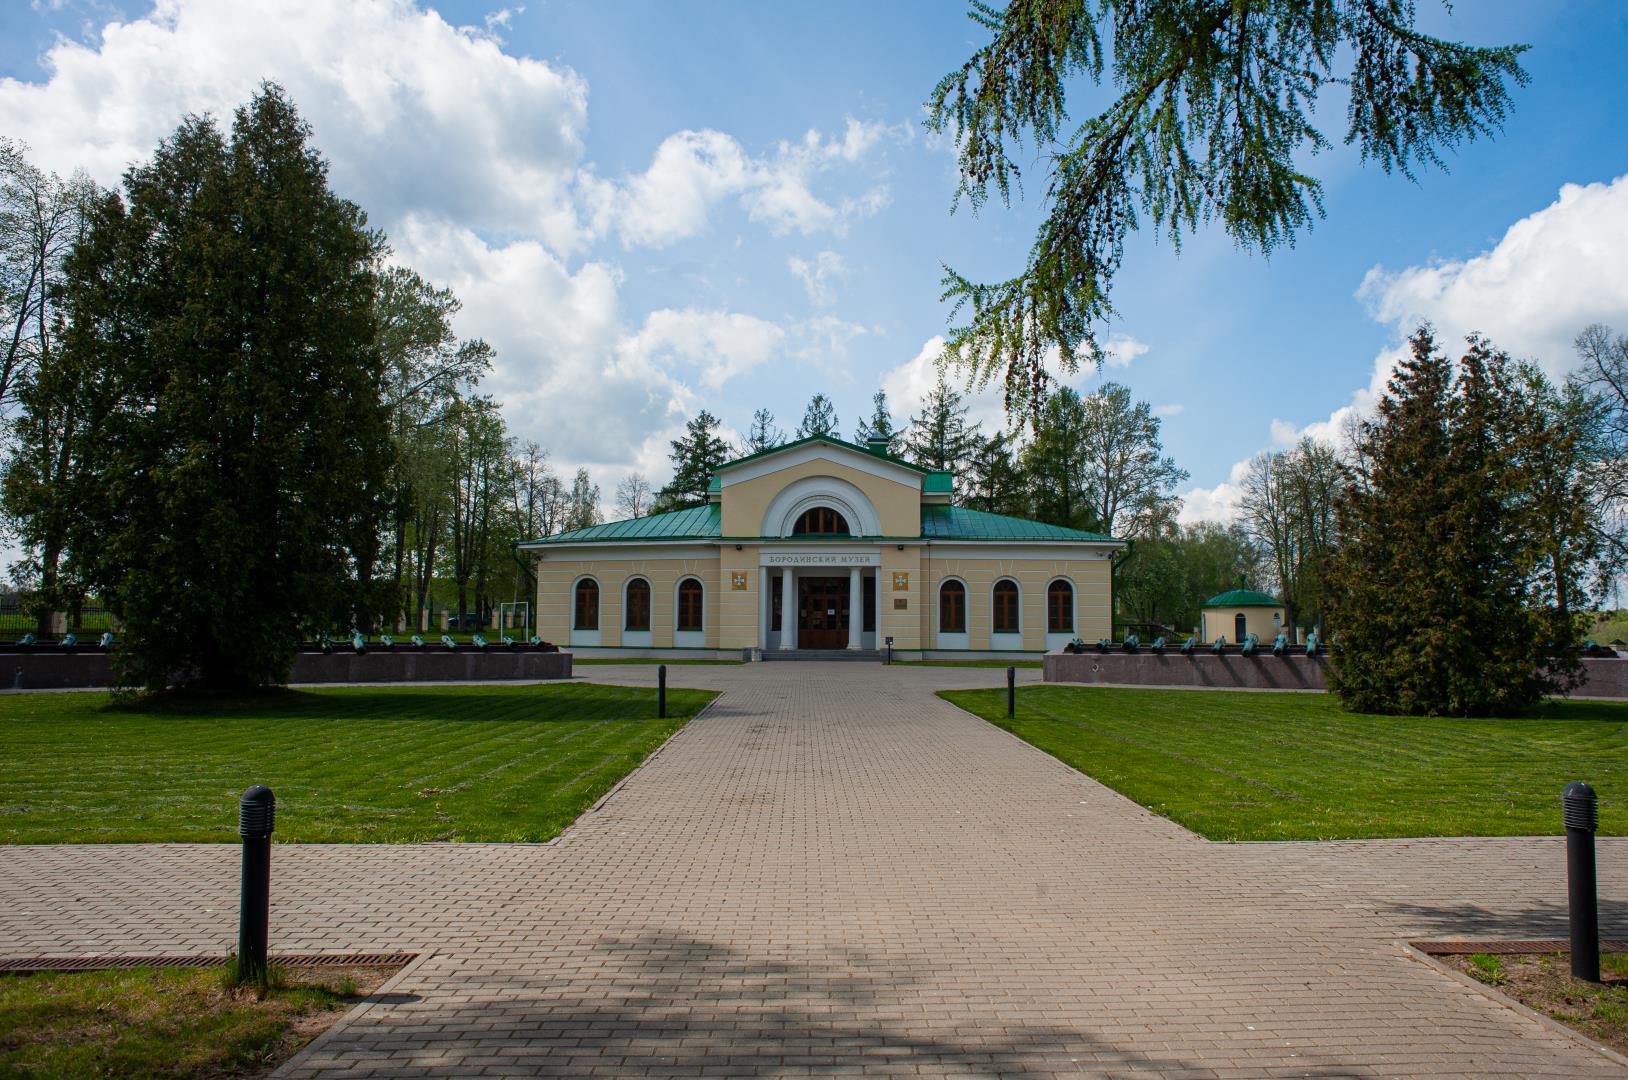 музей на бородинском поле